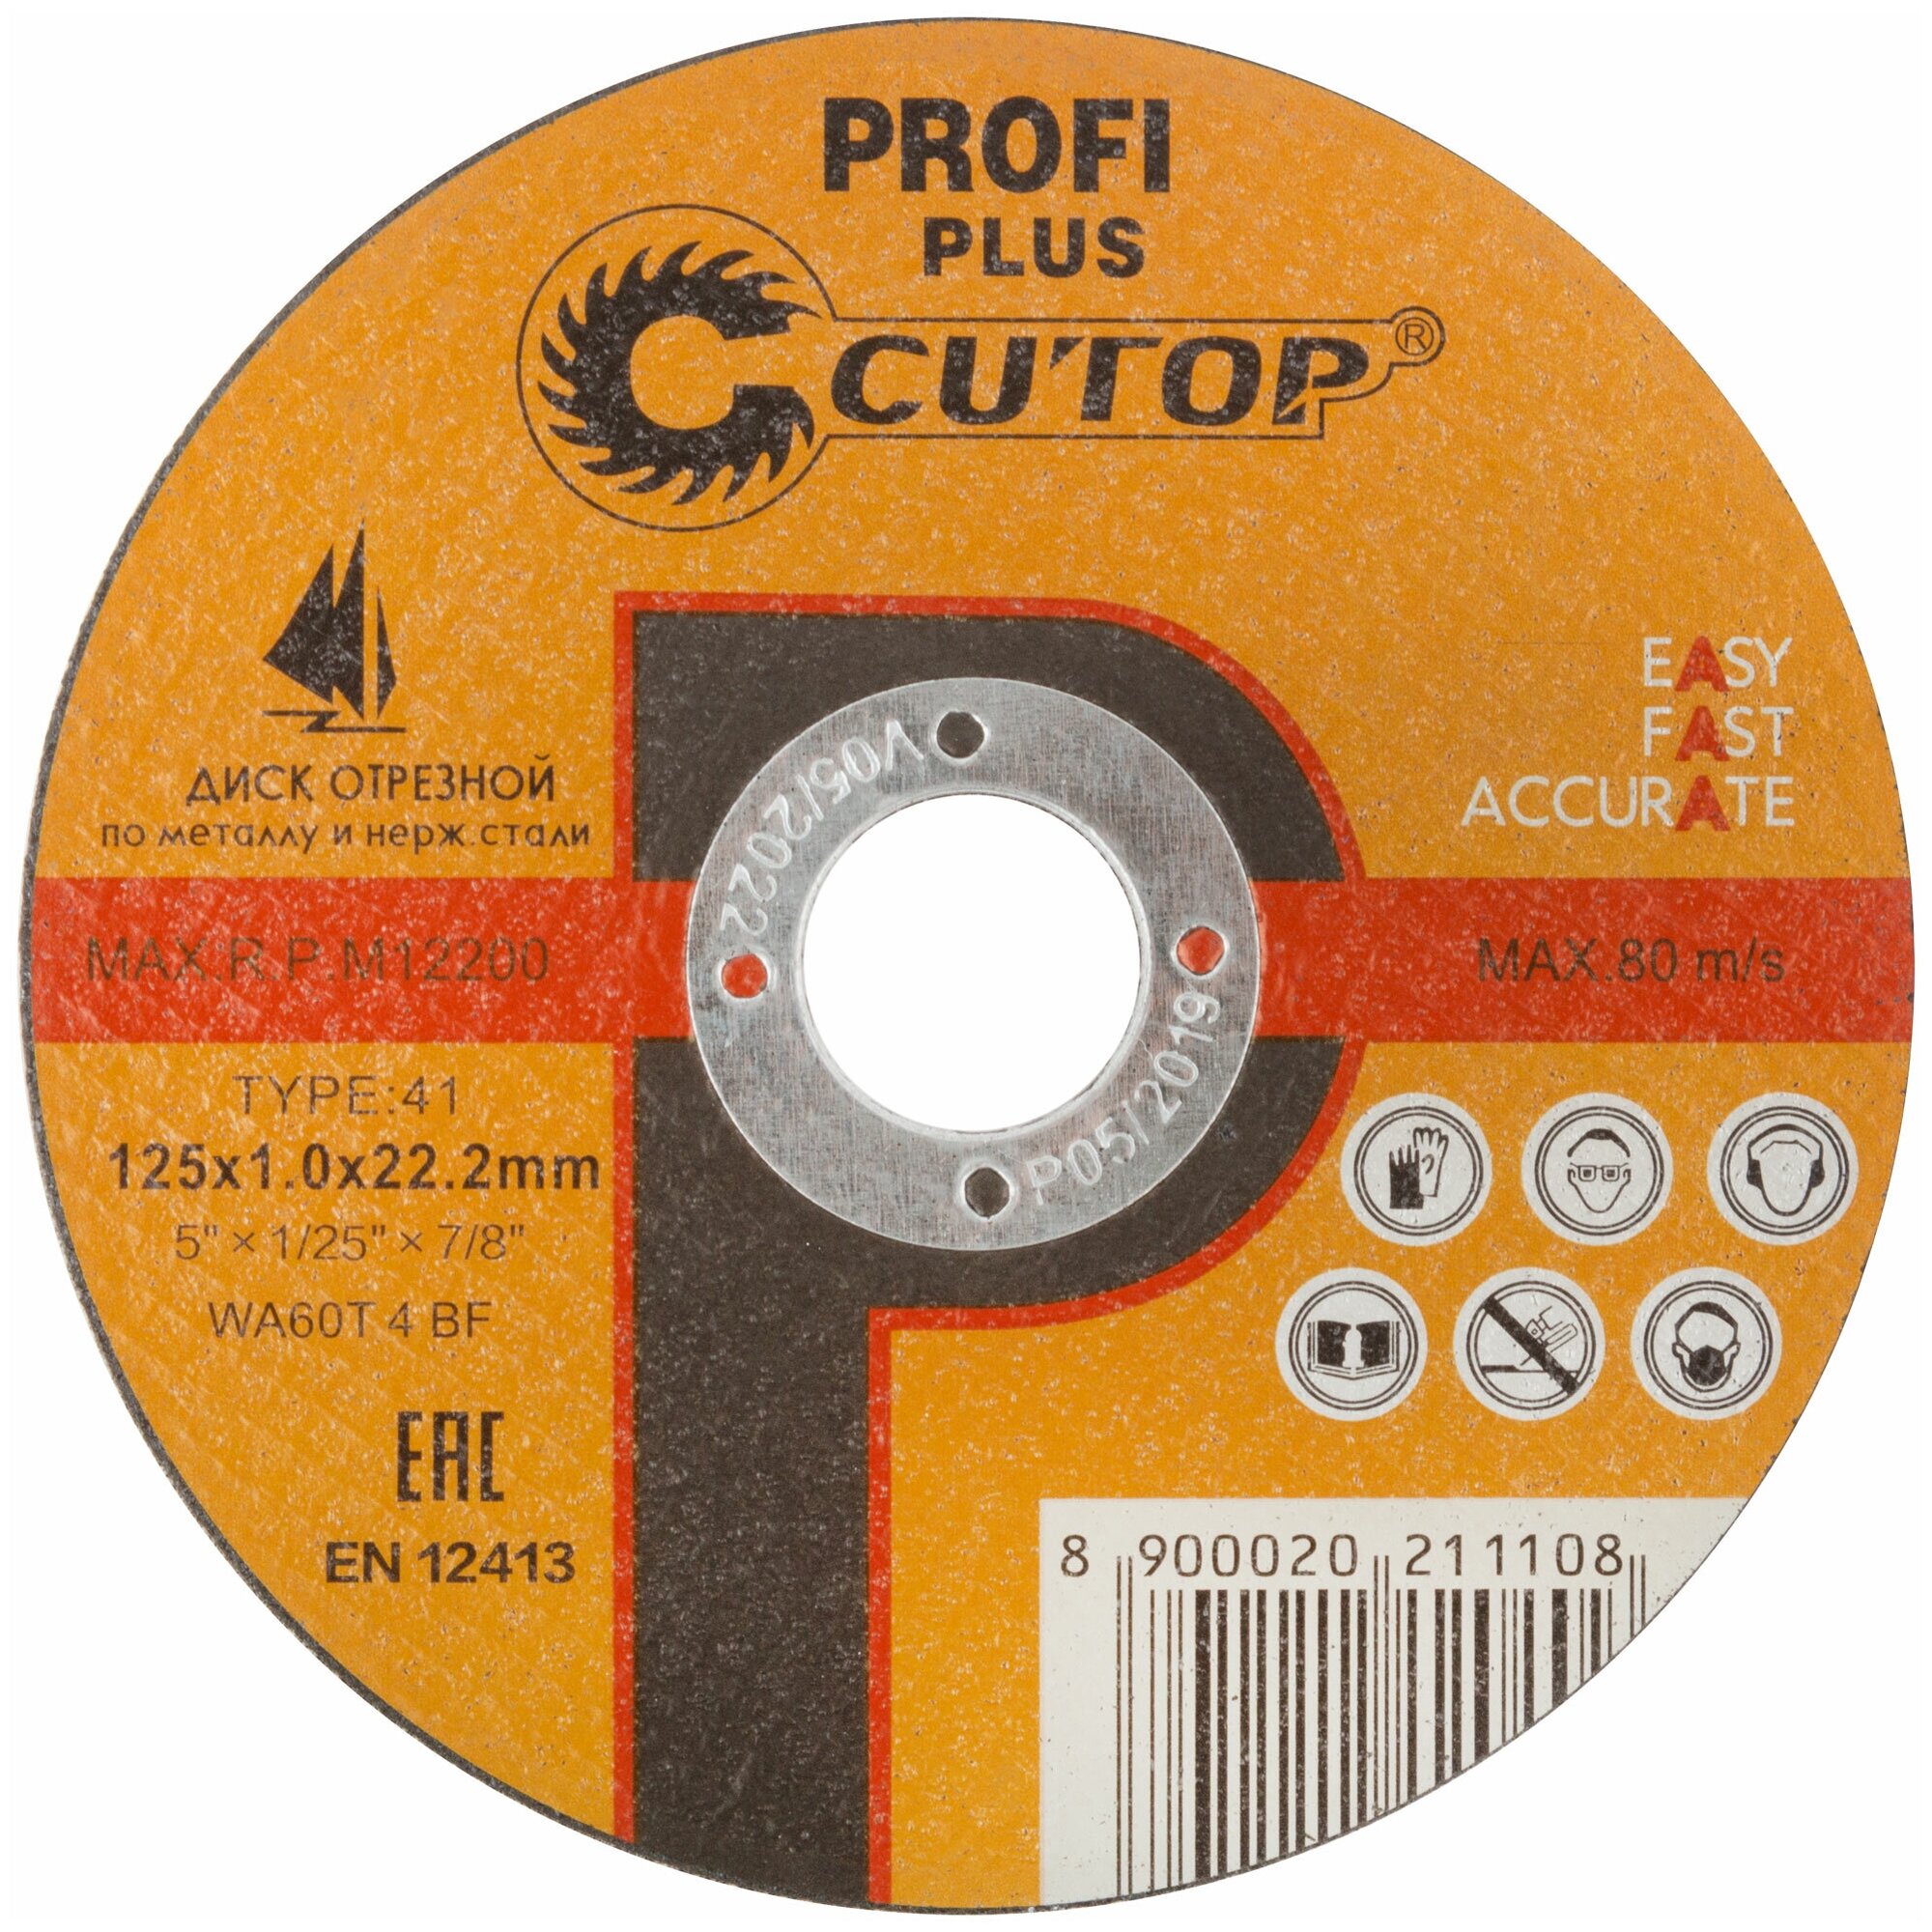 Профессиональный диск отрезной по металлу и нержавеющей стали Т41-150 х 16 х 222 мм Cutop Profi Plus